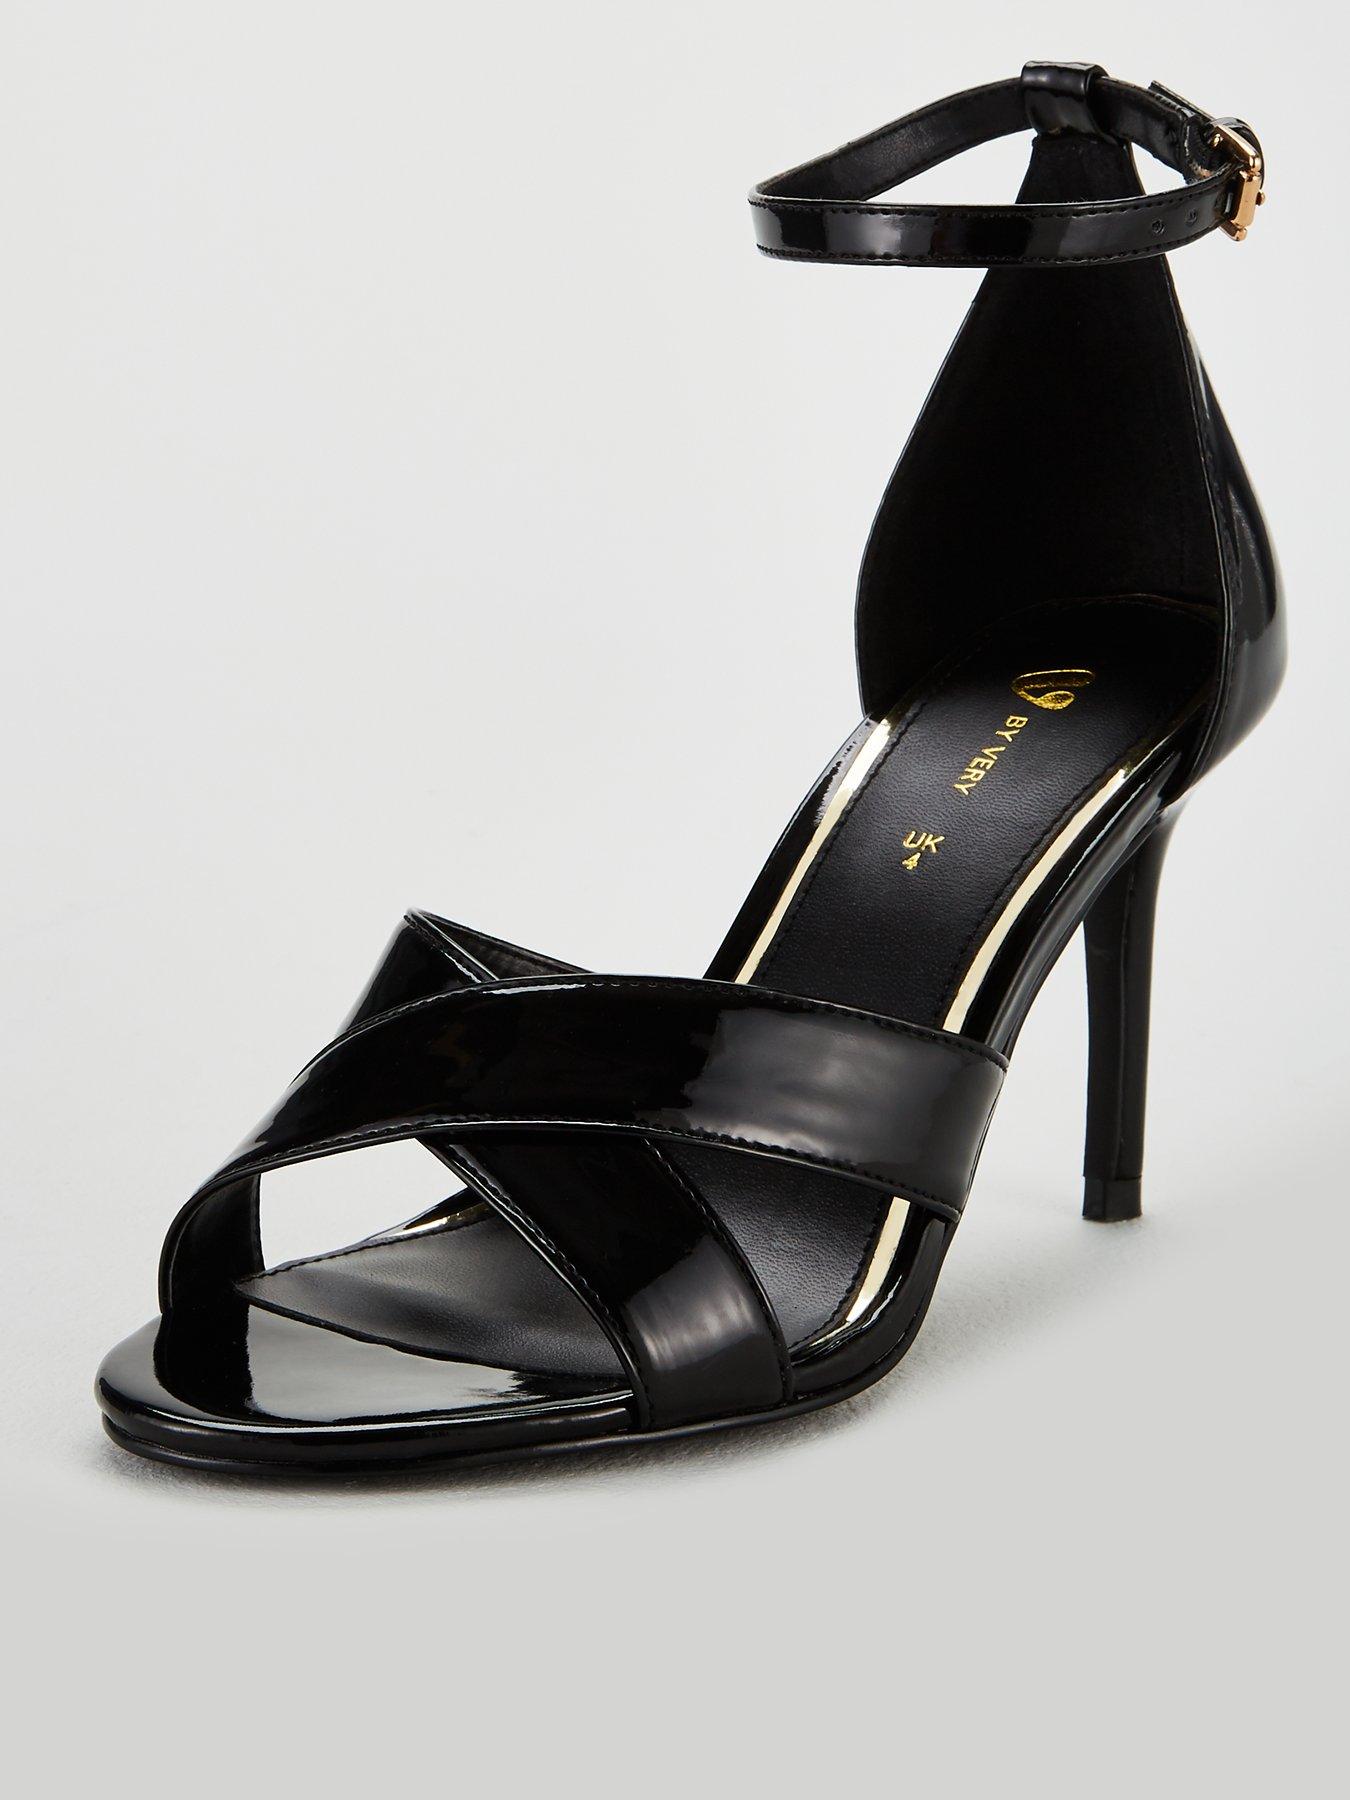 black pumps 3.5 inch heel